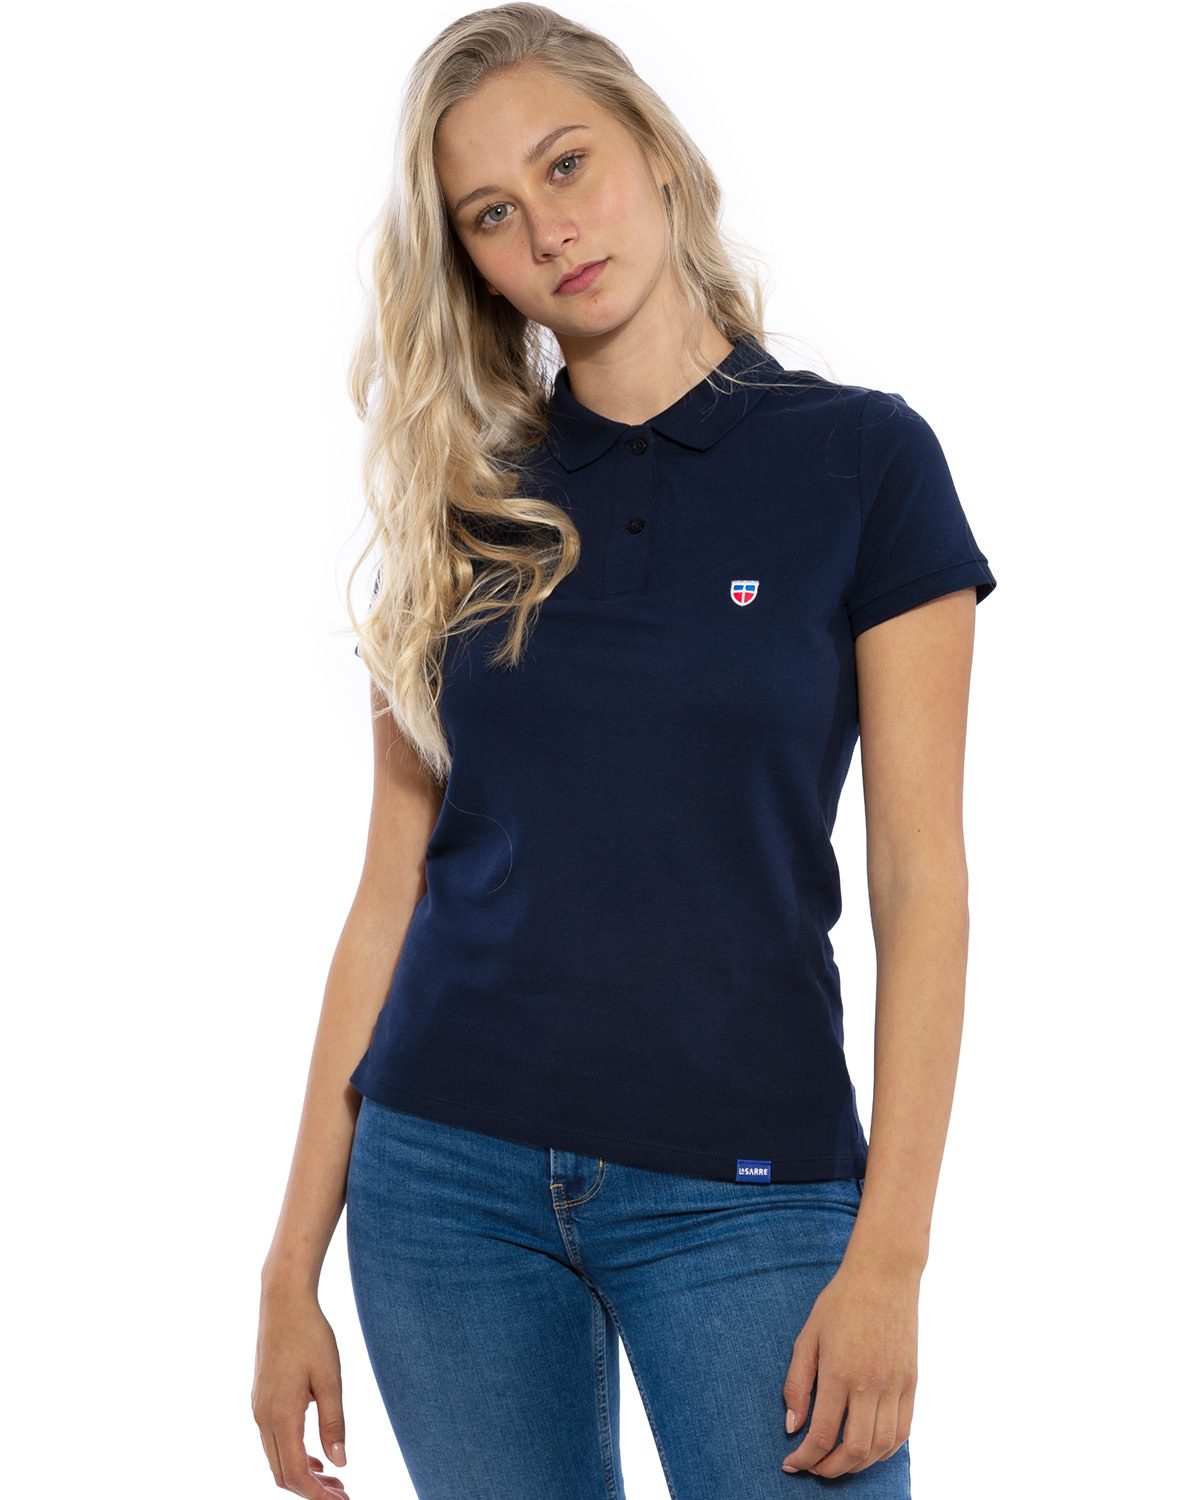 Hochwertig besticktes LASARRE Polo Shirt für Frauen in der Farbe Navy-Blau von der Saarland Marke Lasarre mit LASARRE Wappen in Blau, Weiß, Rot auf der linken Brust und dem blauem LASARRE Markenzeichen am Saum